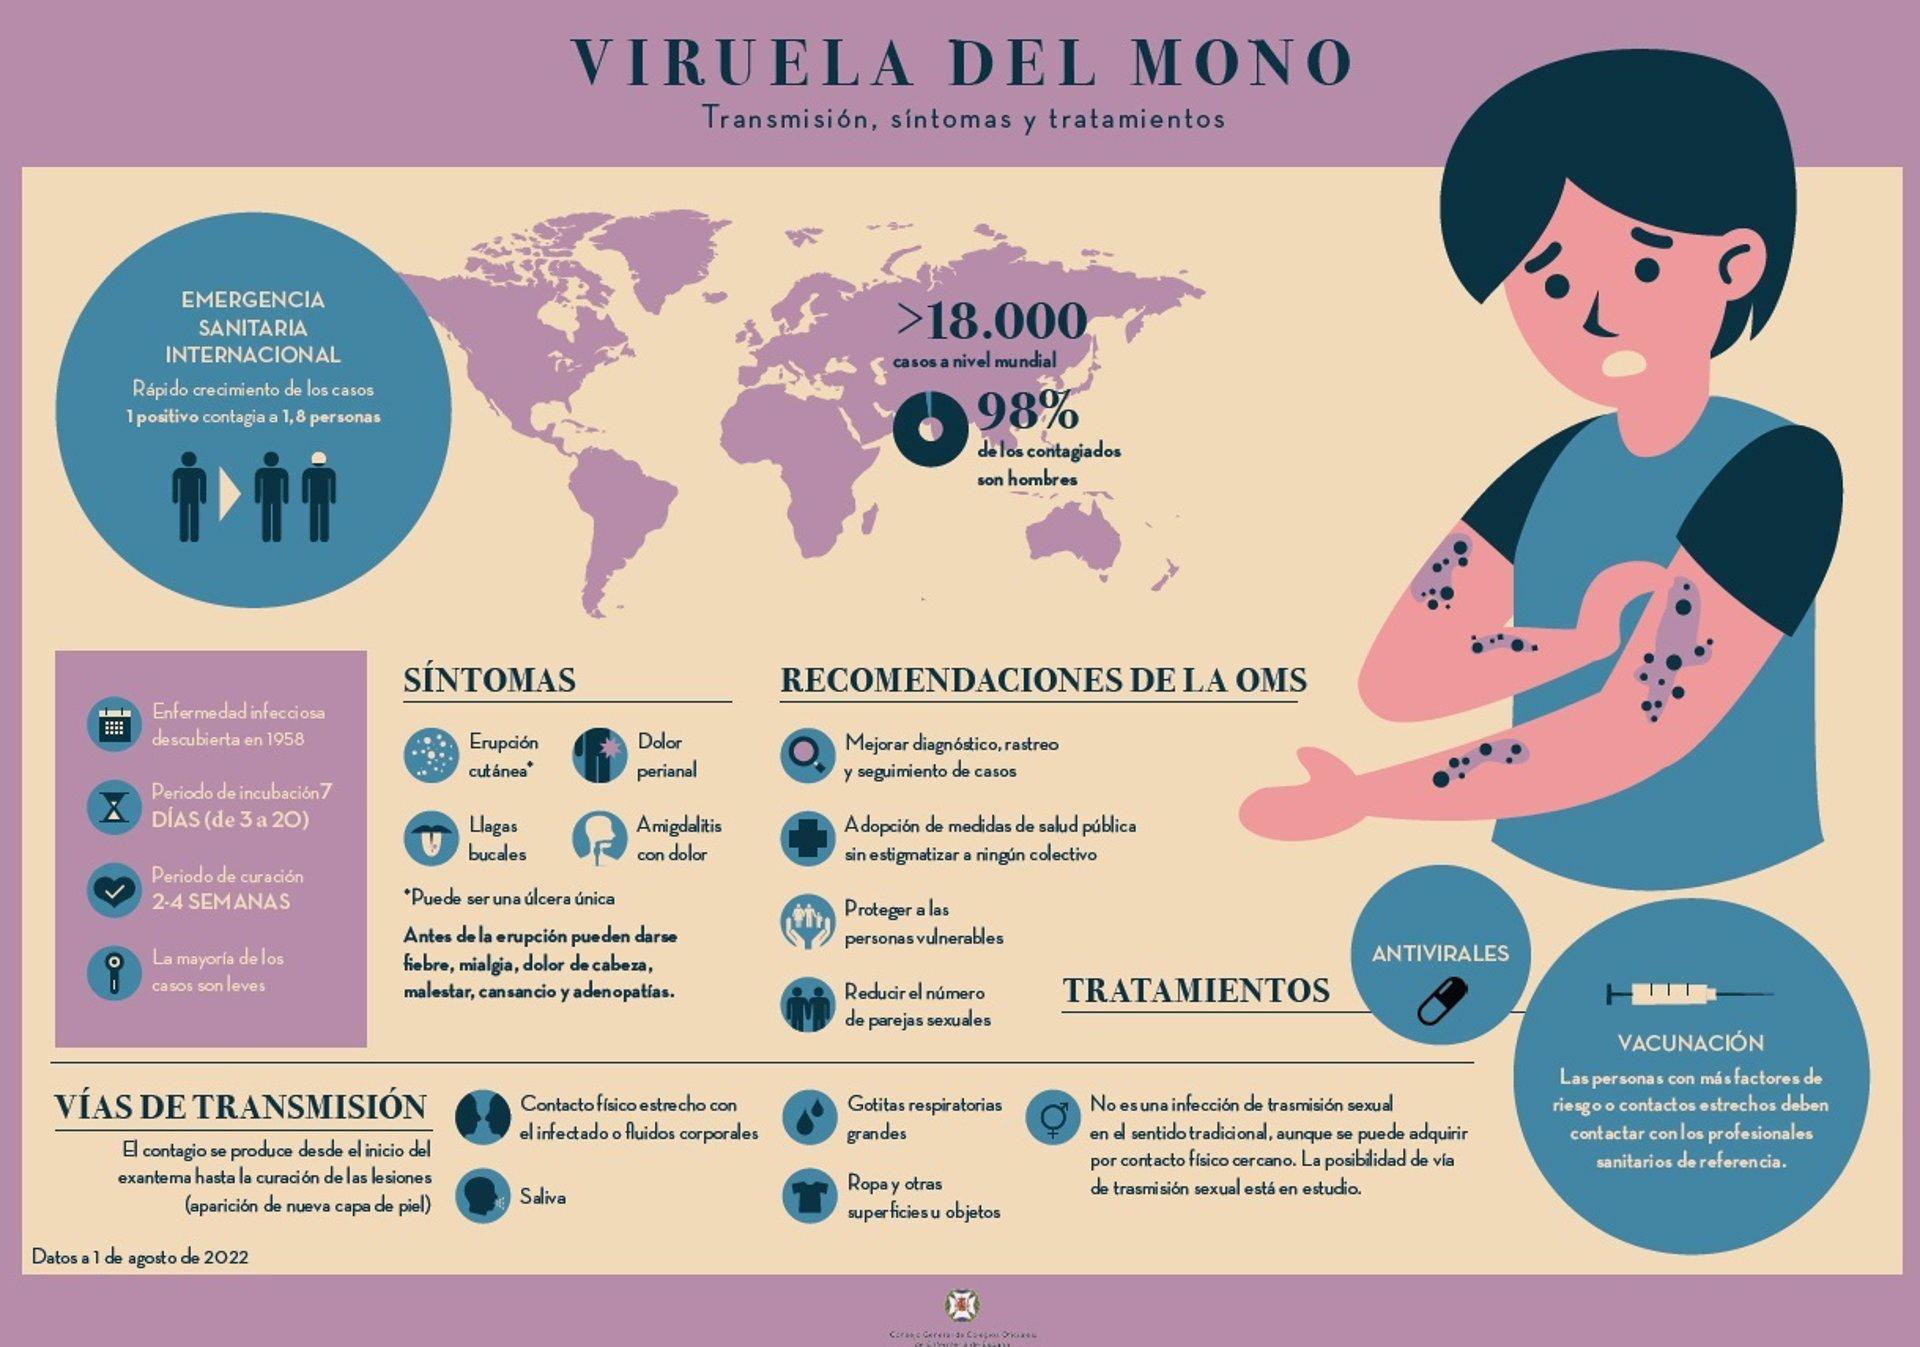 04/08/2022 Infografía del CECOVA sobre la viruela del mono
ESPAÑA EUROPA SALUD COMUNIDAD VALENCIANA
CECOVA